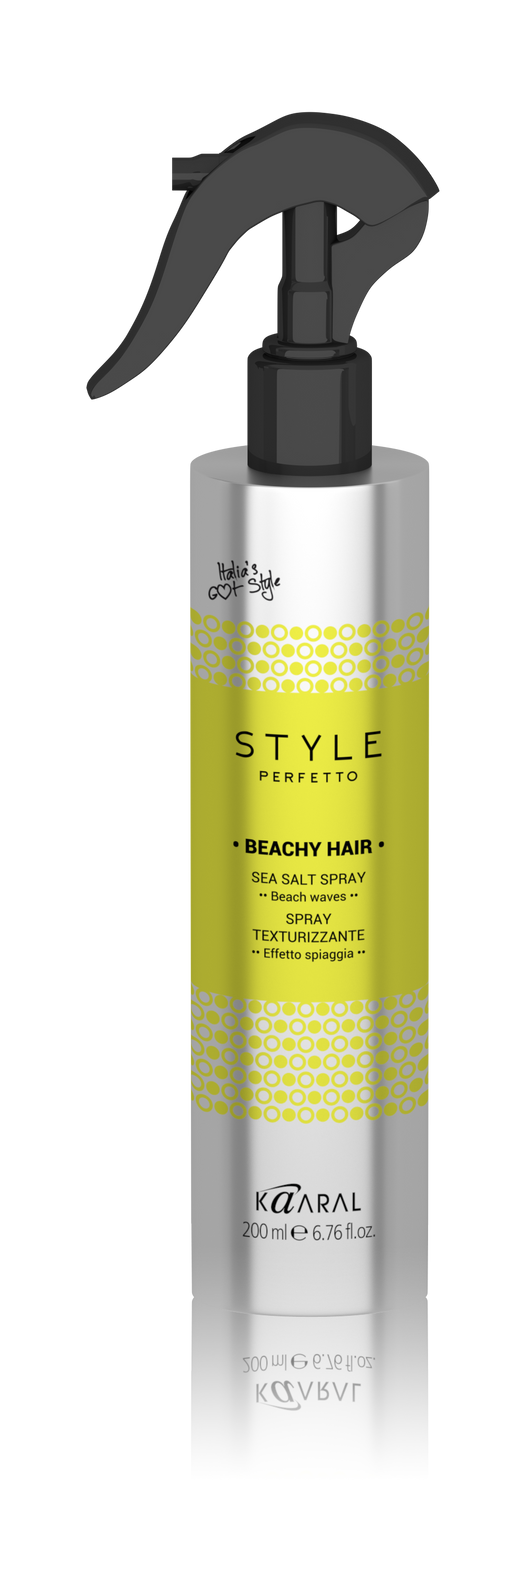 Kaaral Style Perfetto Beachy Hair Sea Salt Spray - Clearance!